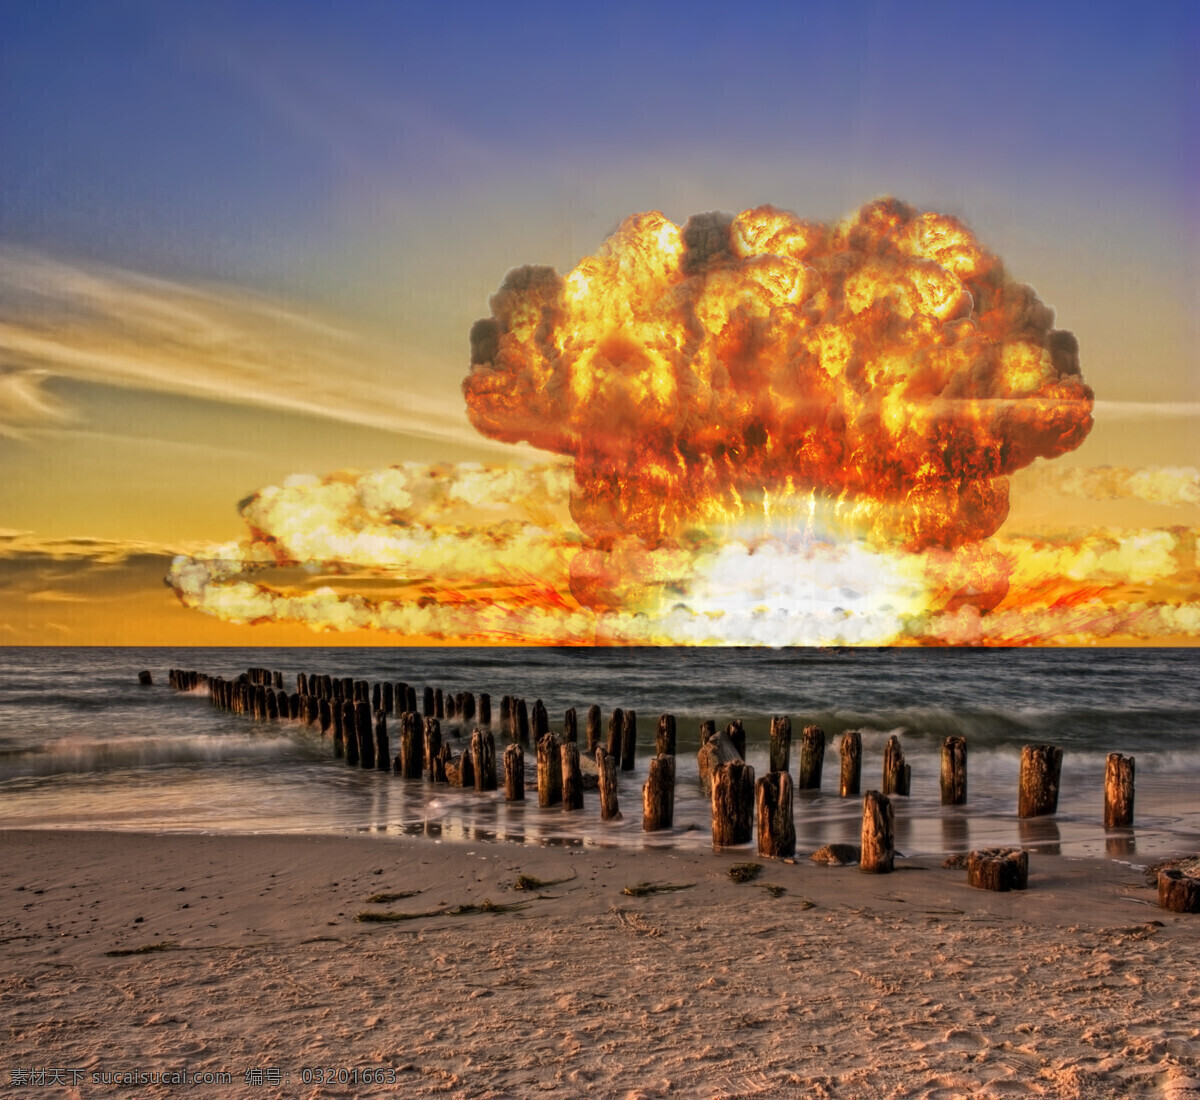 蘑菇云 原子弹 爆炸图 海边 火红的云朵 蓝色的天空 军事武器 现代科技